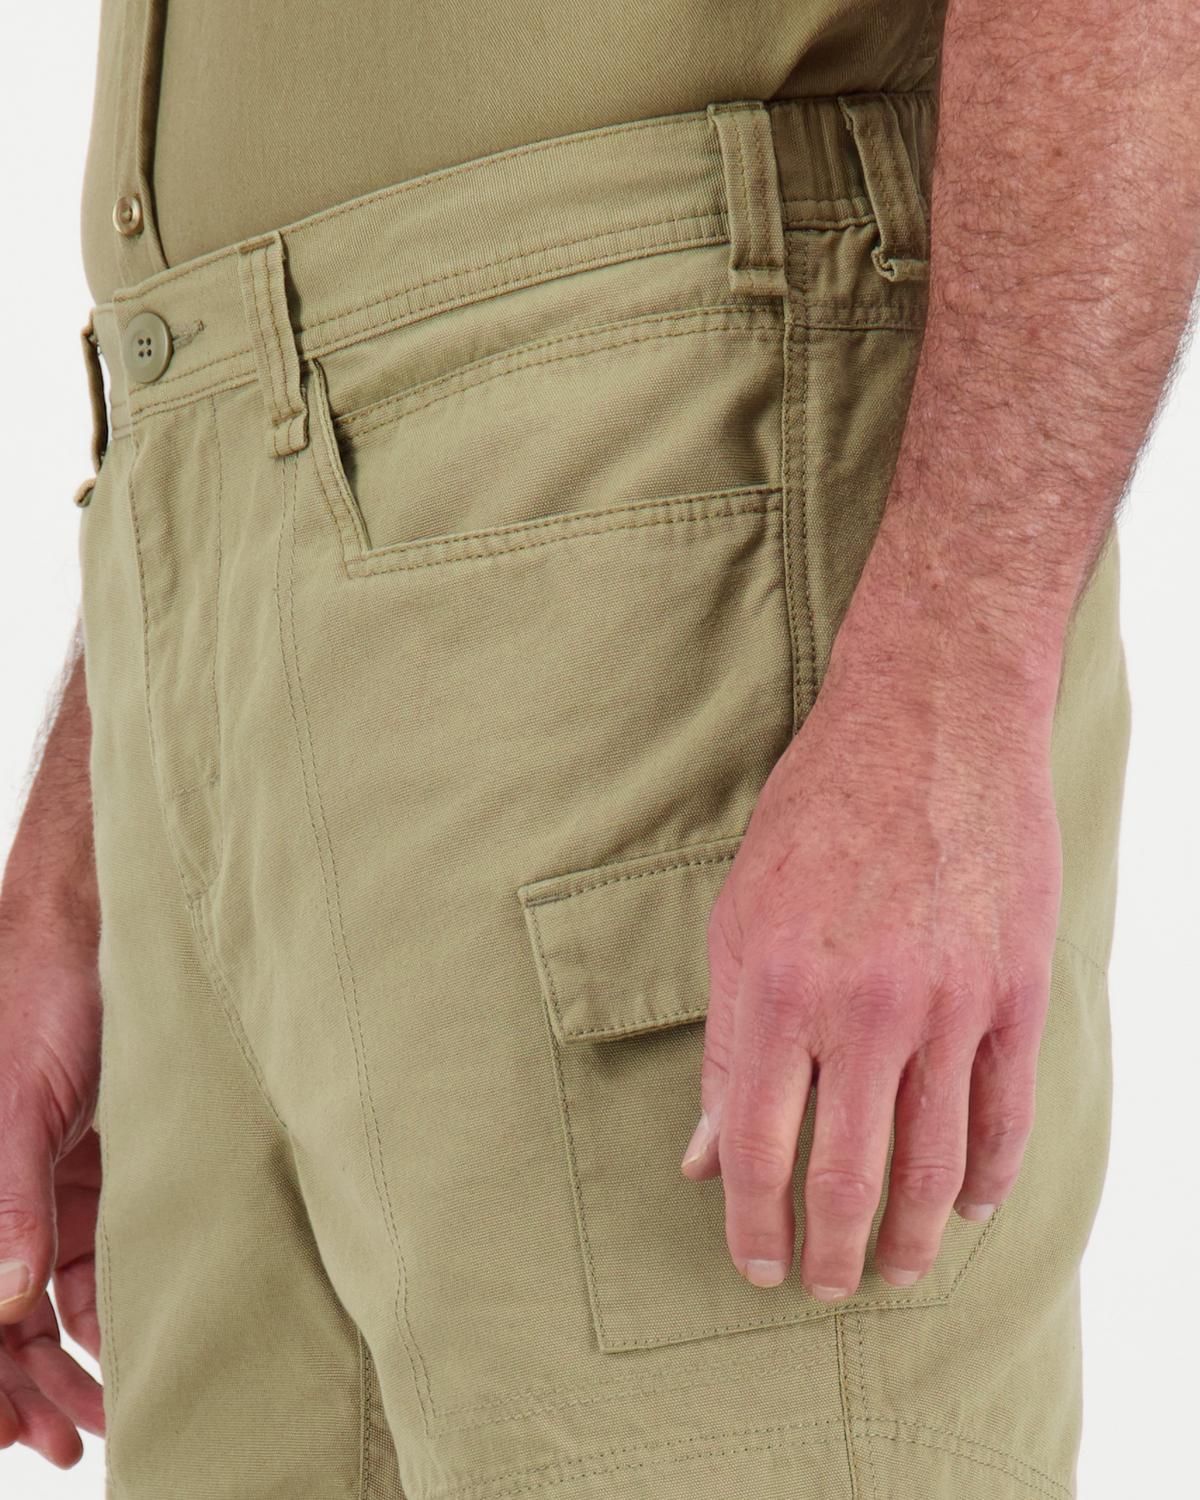 K-Way Elements Men’s Safari Shorts Extended Sizes -  Khaki